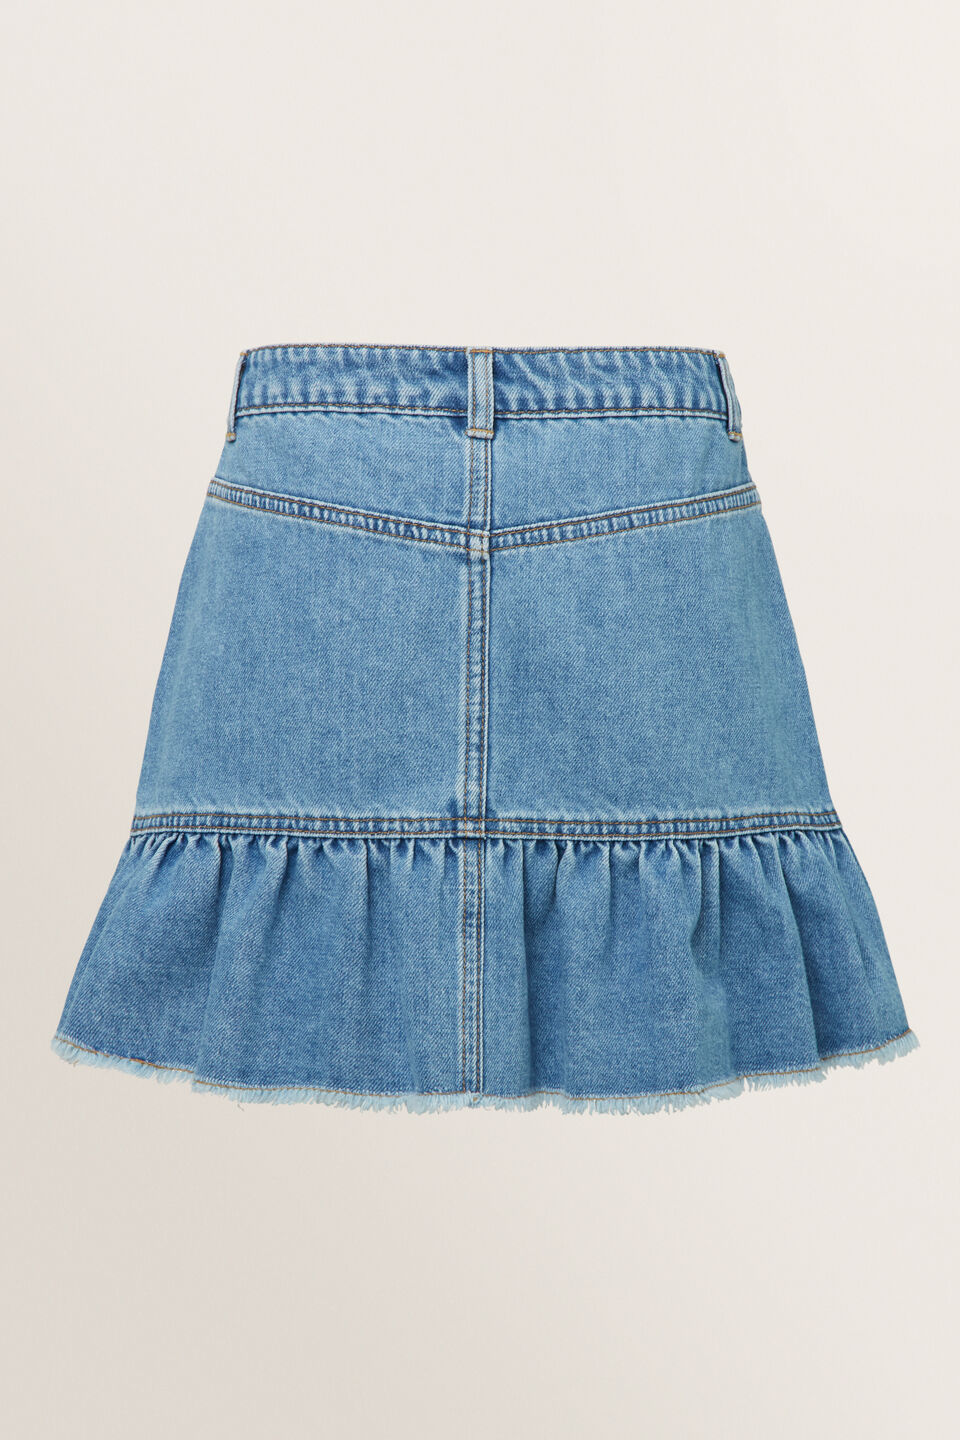 Peplum Denim Skirt  Retro Blue Wash